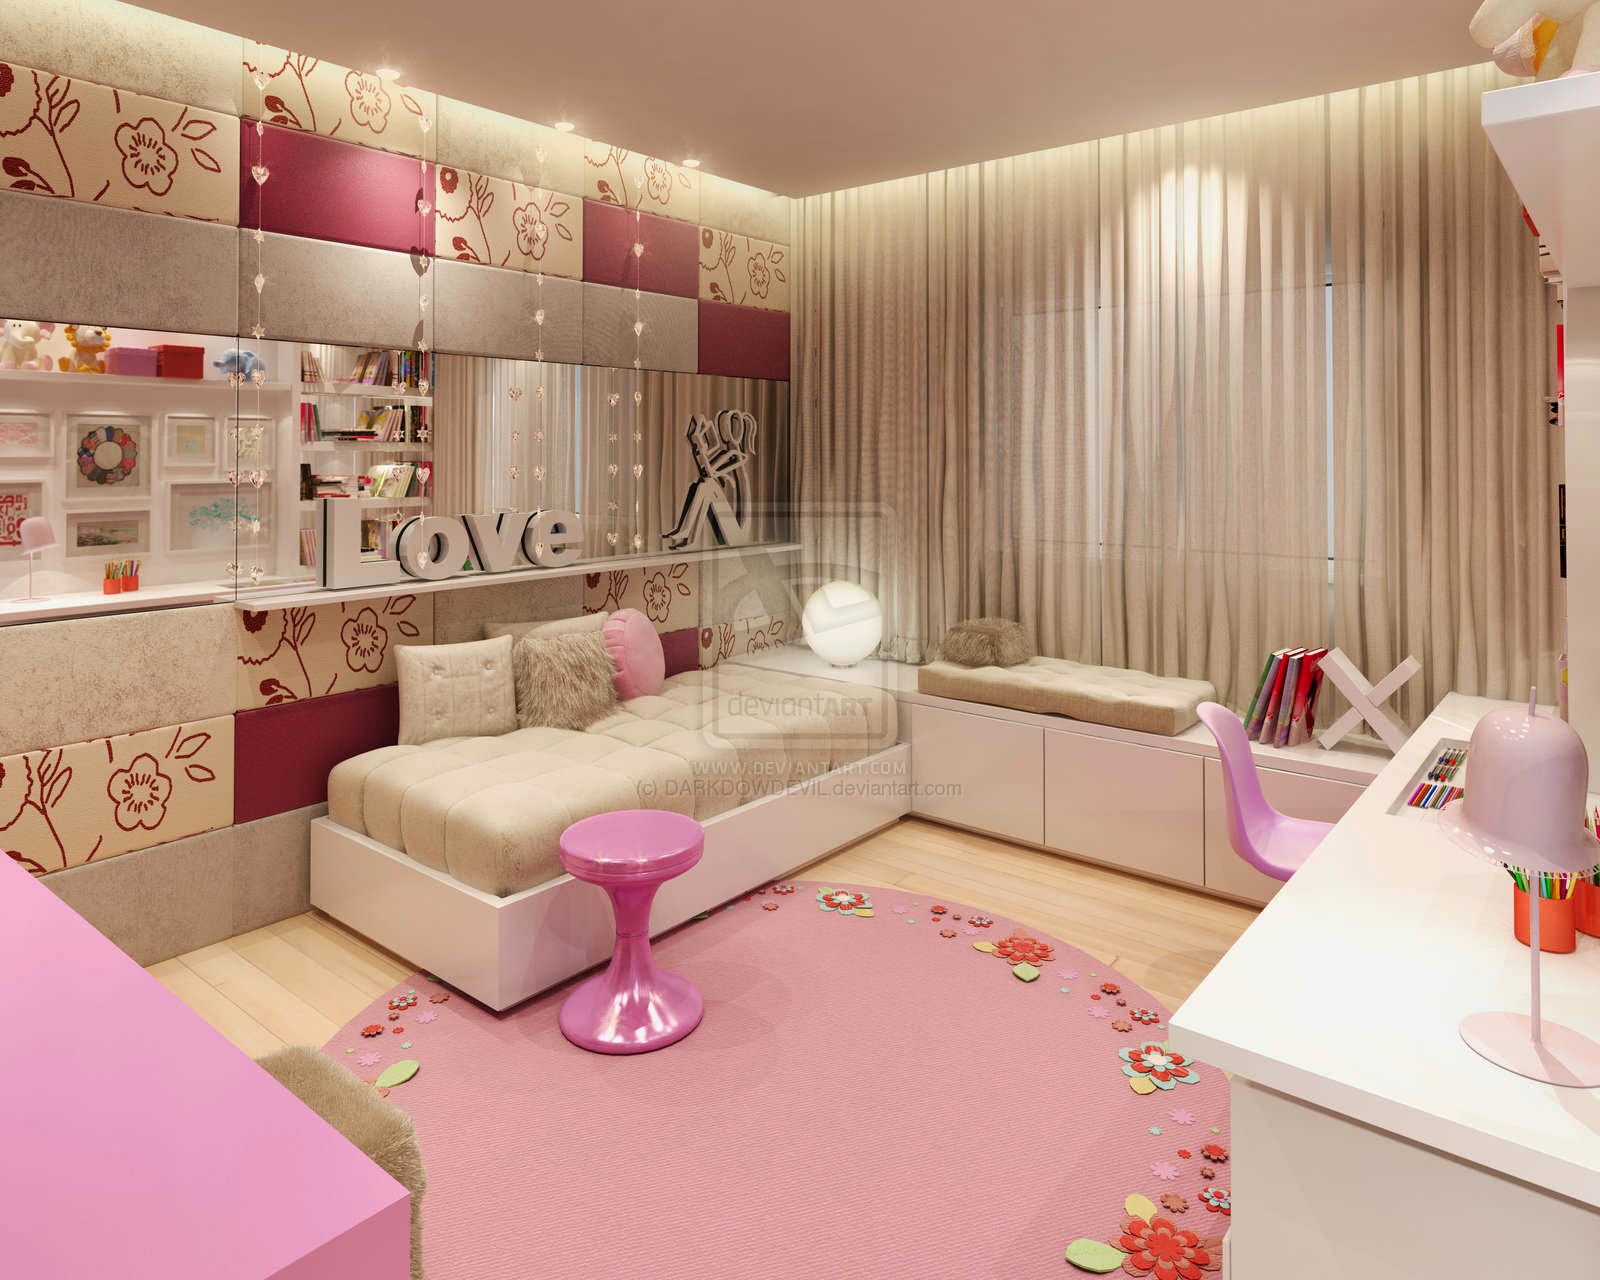  Desain Kamar Tidur untuk wanita warna cerah pink